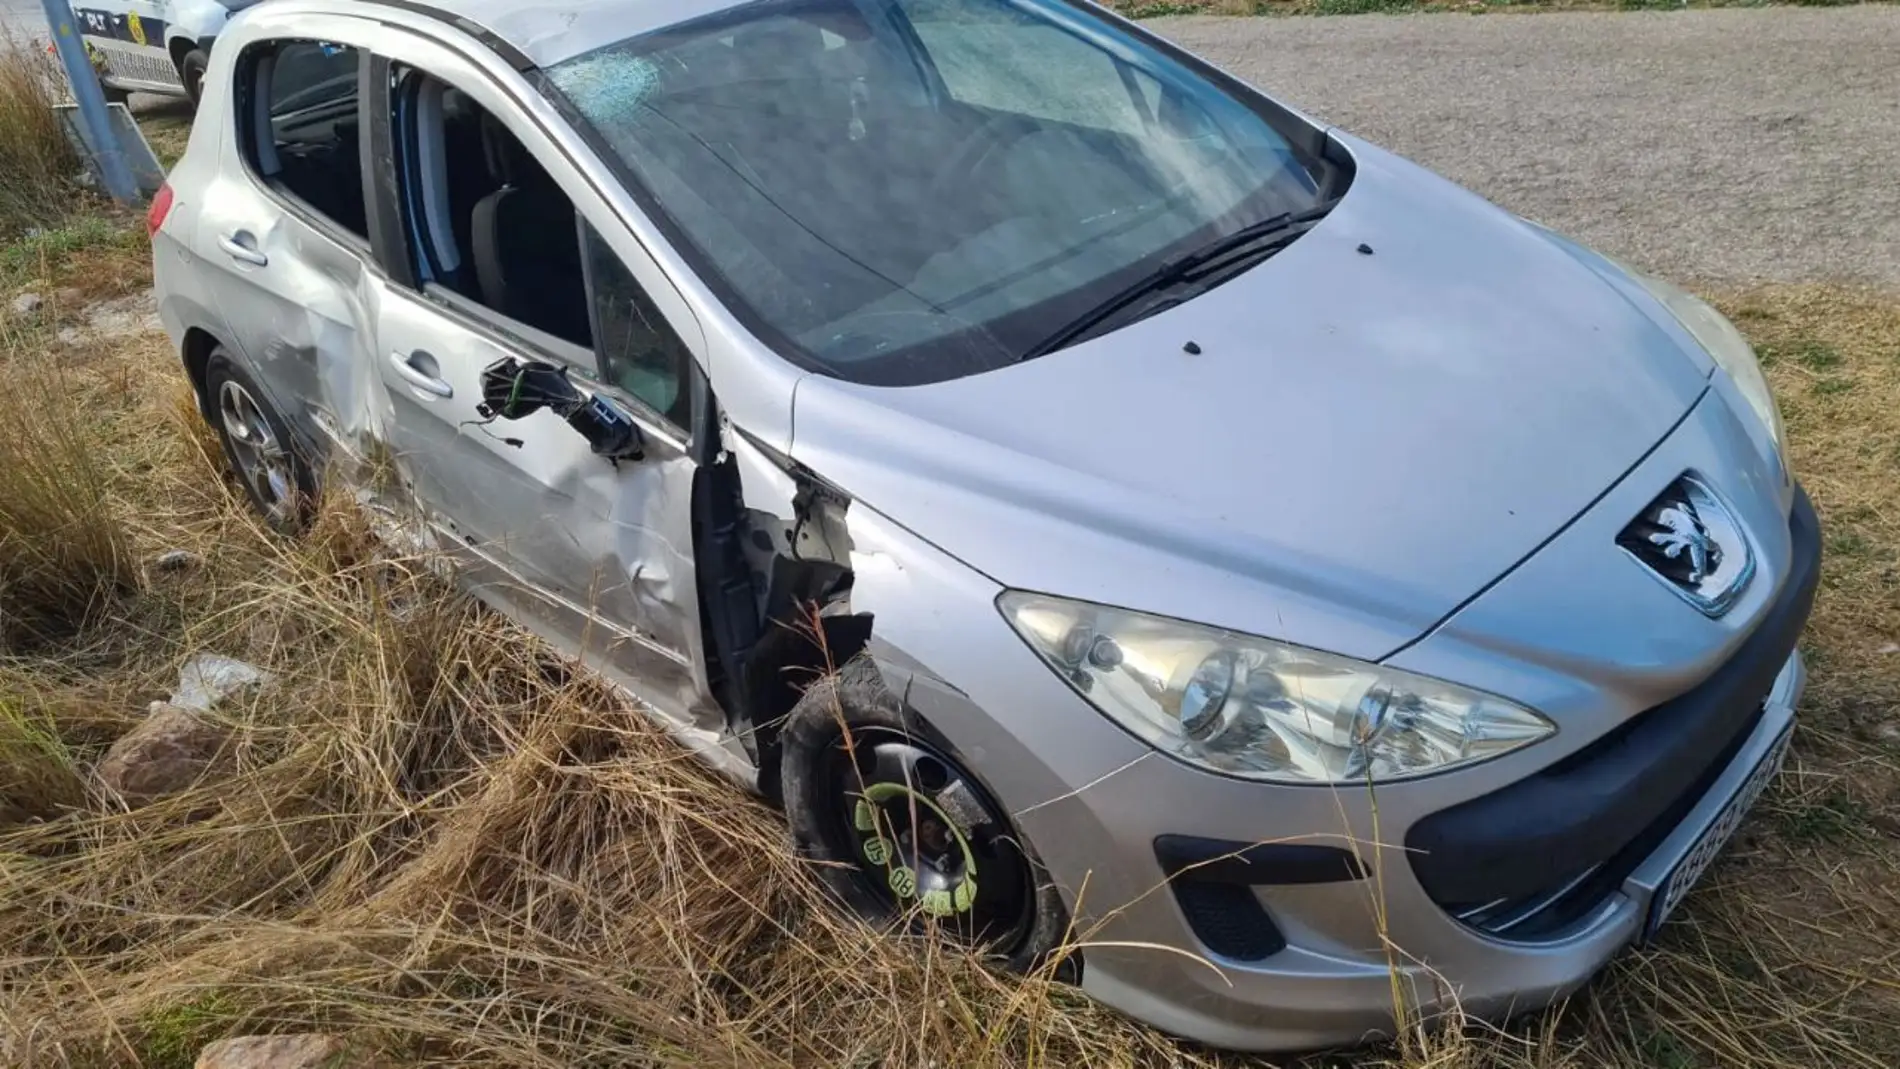 Aparece abandonado el coche implicado en el accidente mortal de Castellón